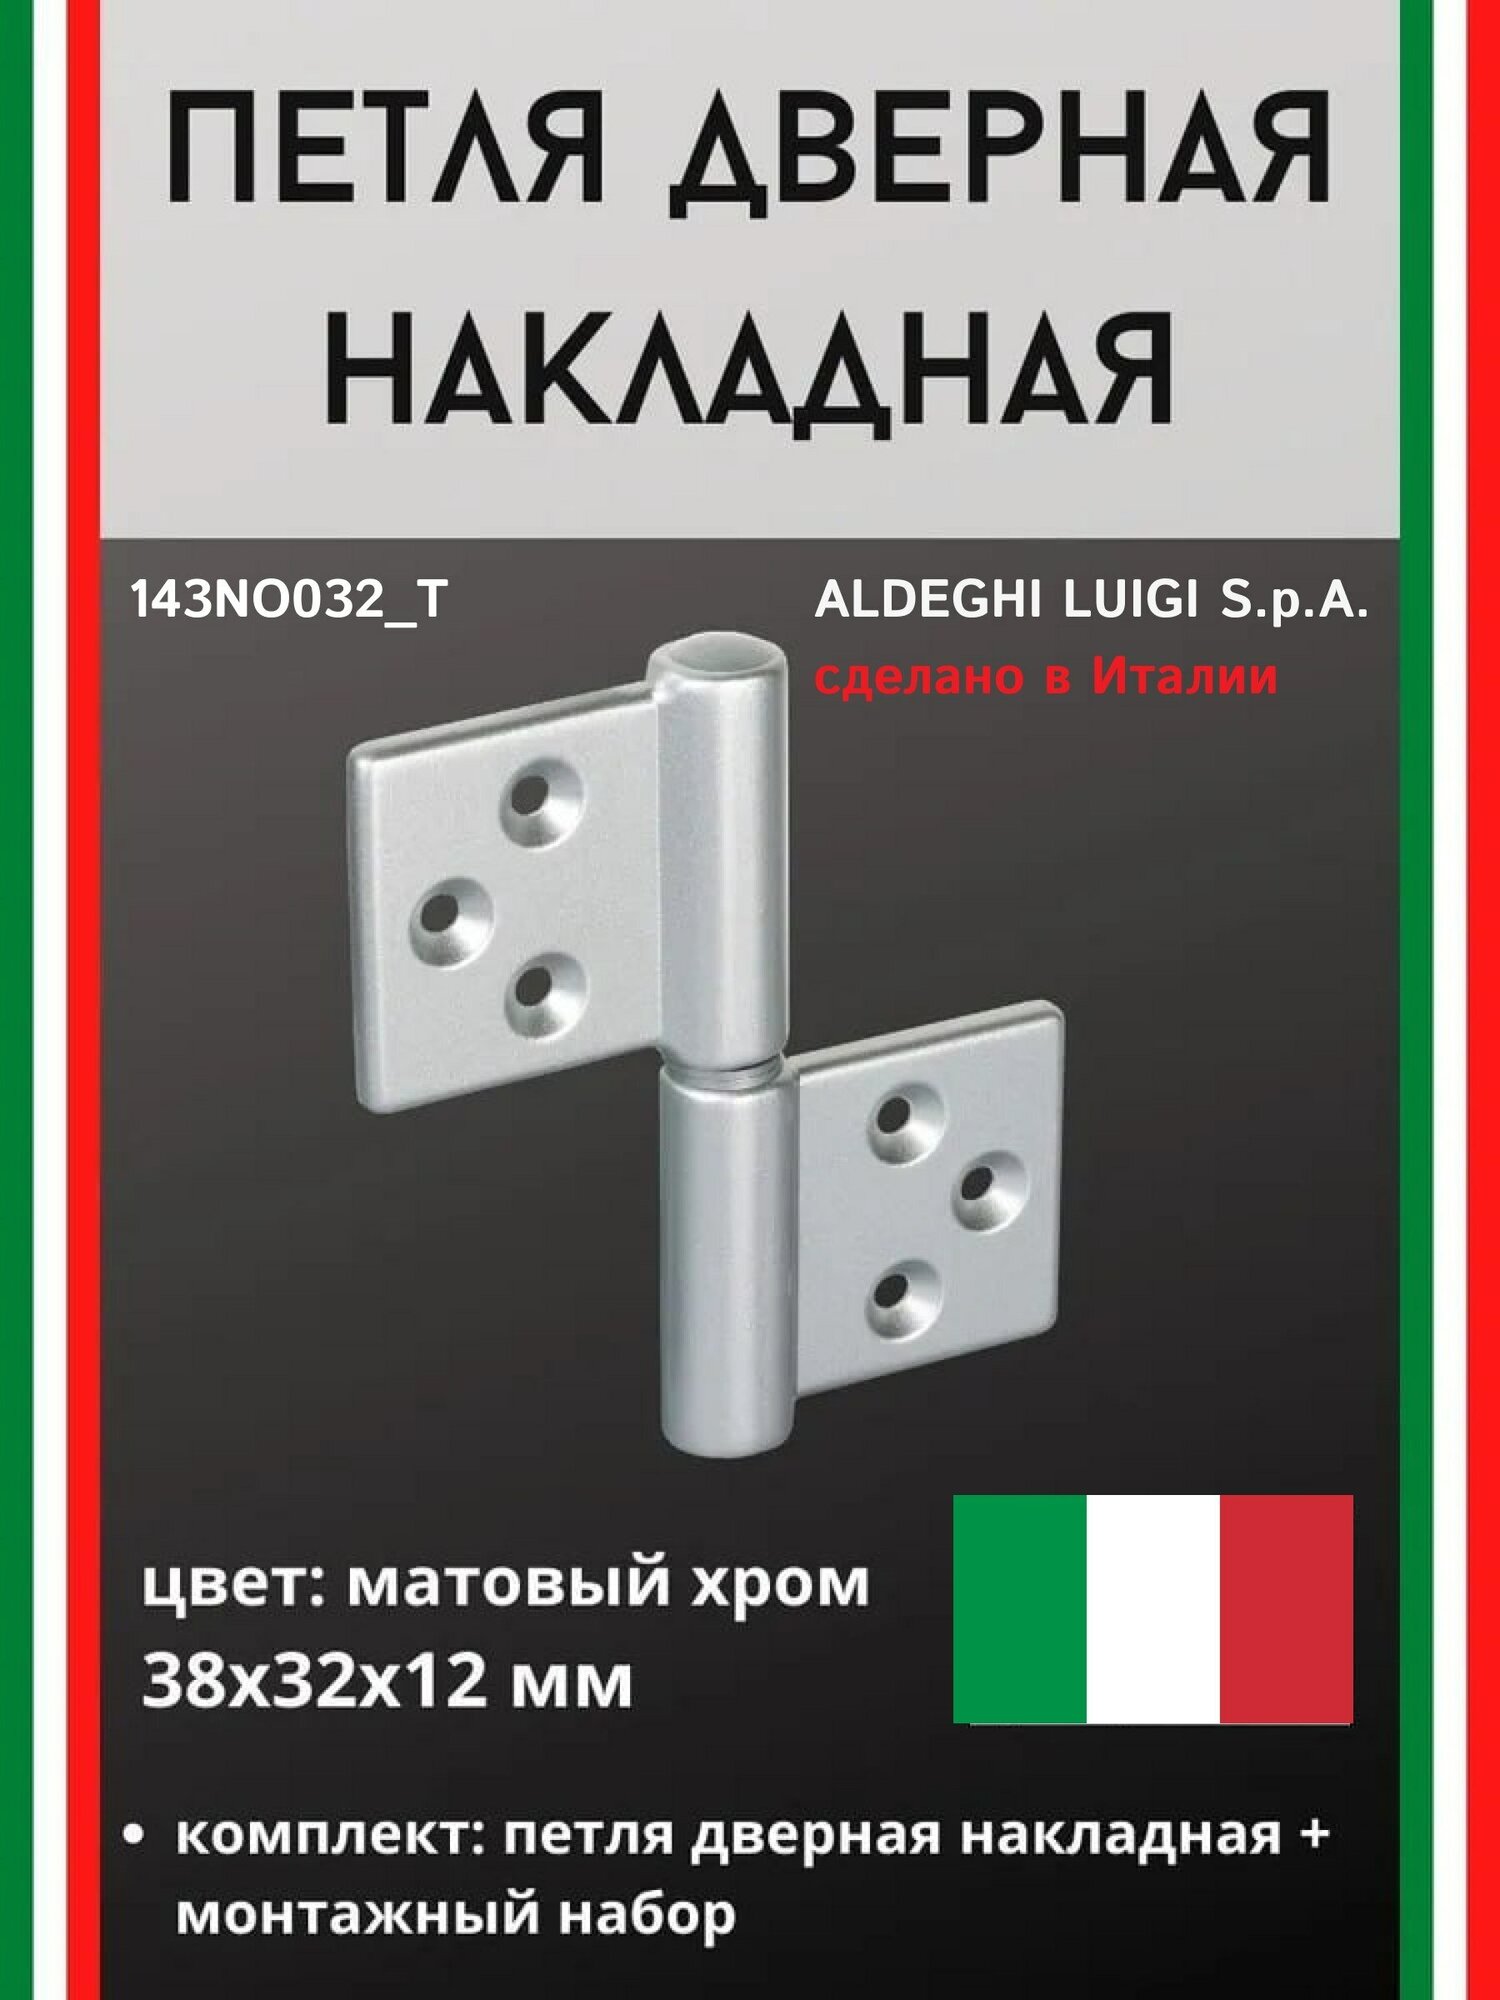 Накладная дверная петля ALDEGHI LUIGI SPA накладная 38x32x12 мм, цвет: мат. хром + монтажный набор 143CS032_T - фотография № 1